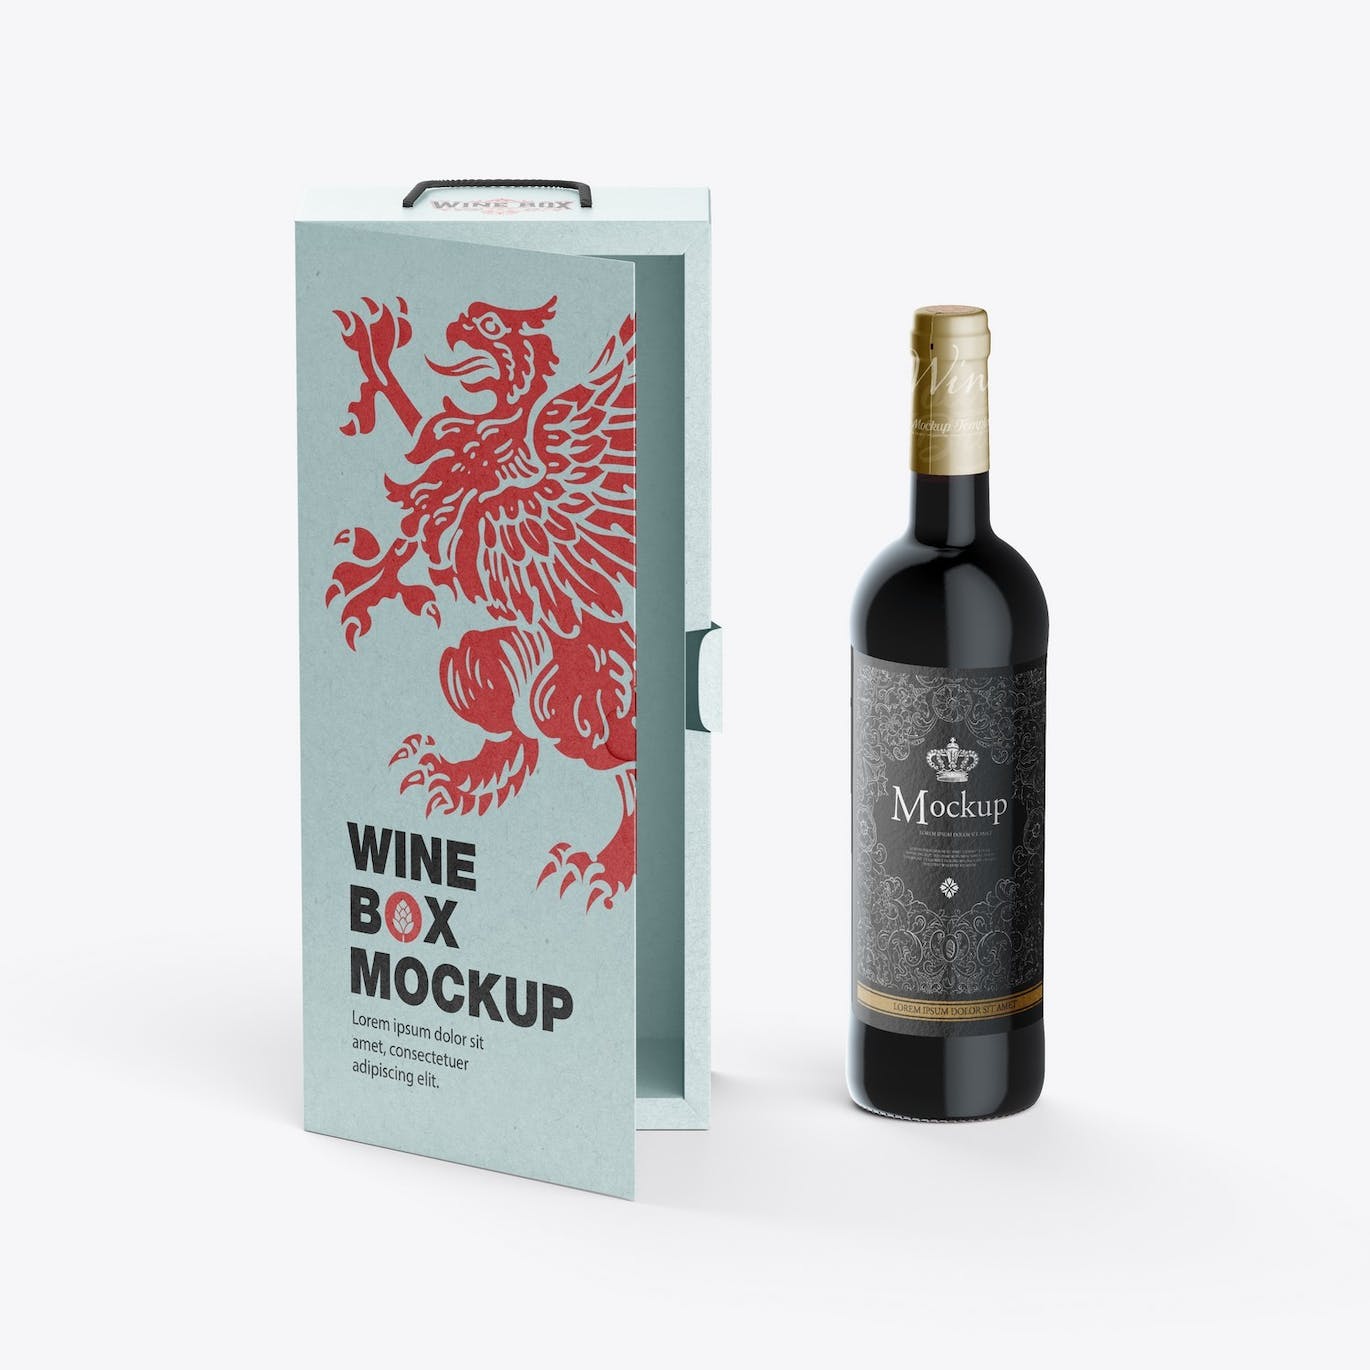 红酒酒瓶纸礼盒品牌包装设计样机 Box with Wine Bottle Mockup 样机素材 第10张